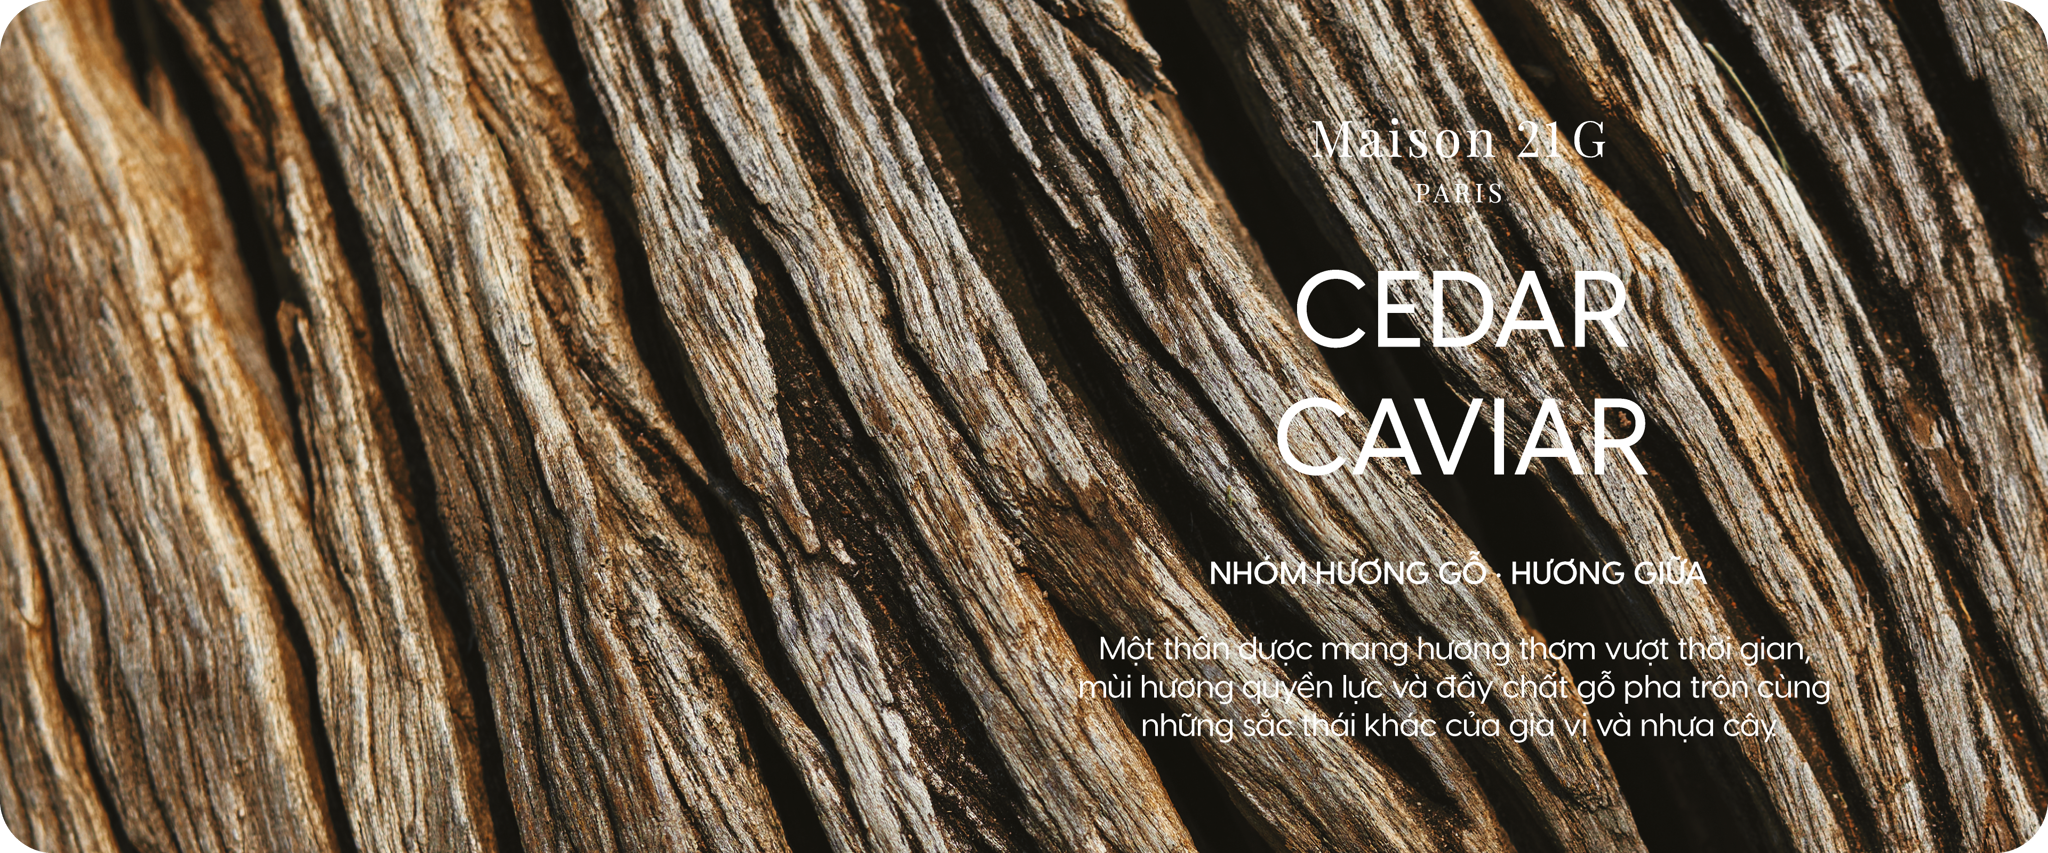 Cedar Caviar | Tuyết tùng